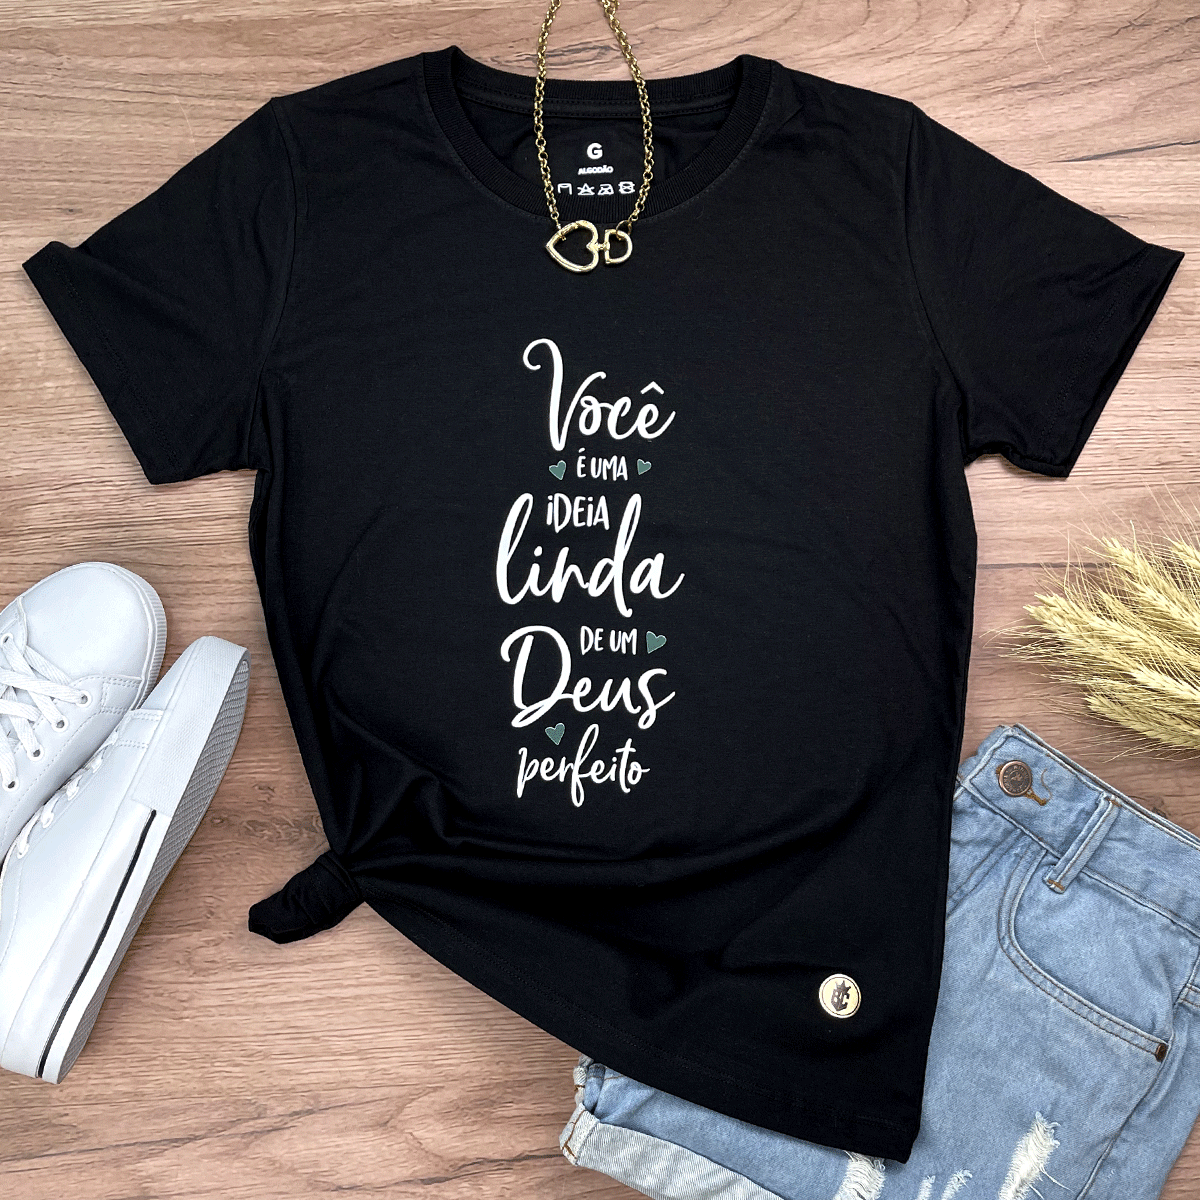 Camiseta Feminina Preta Você é Uma Ideia Linda